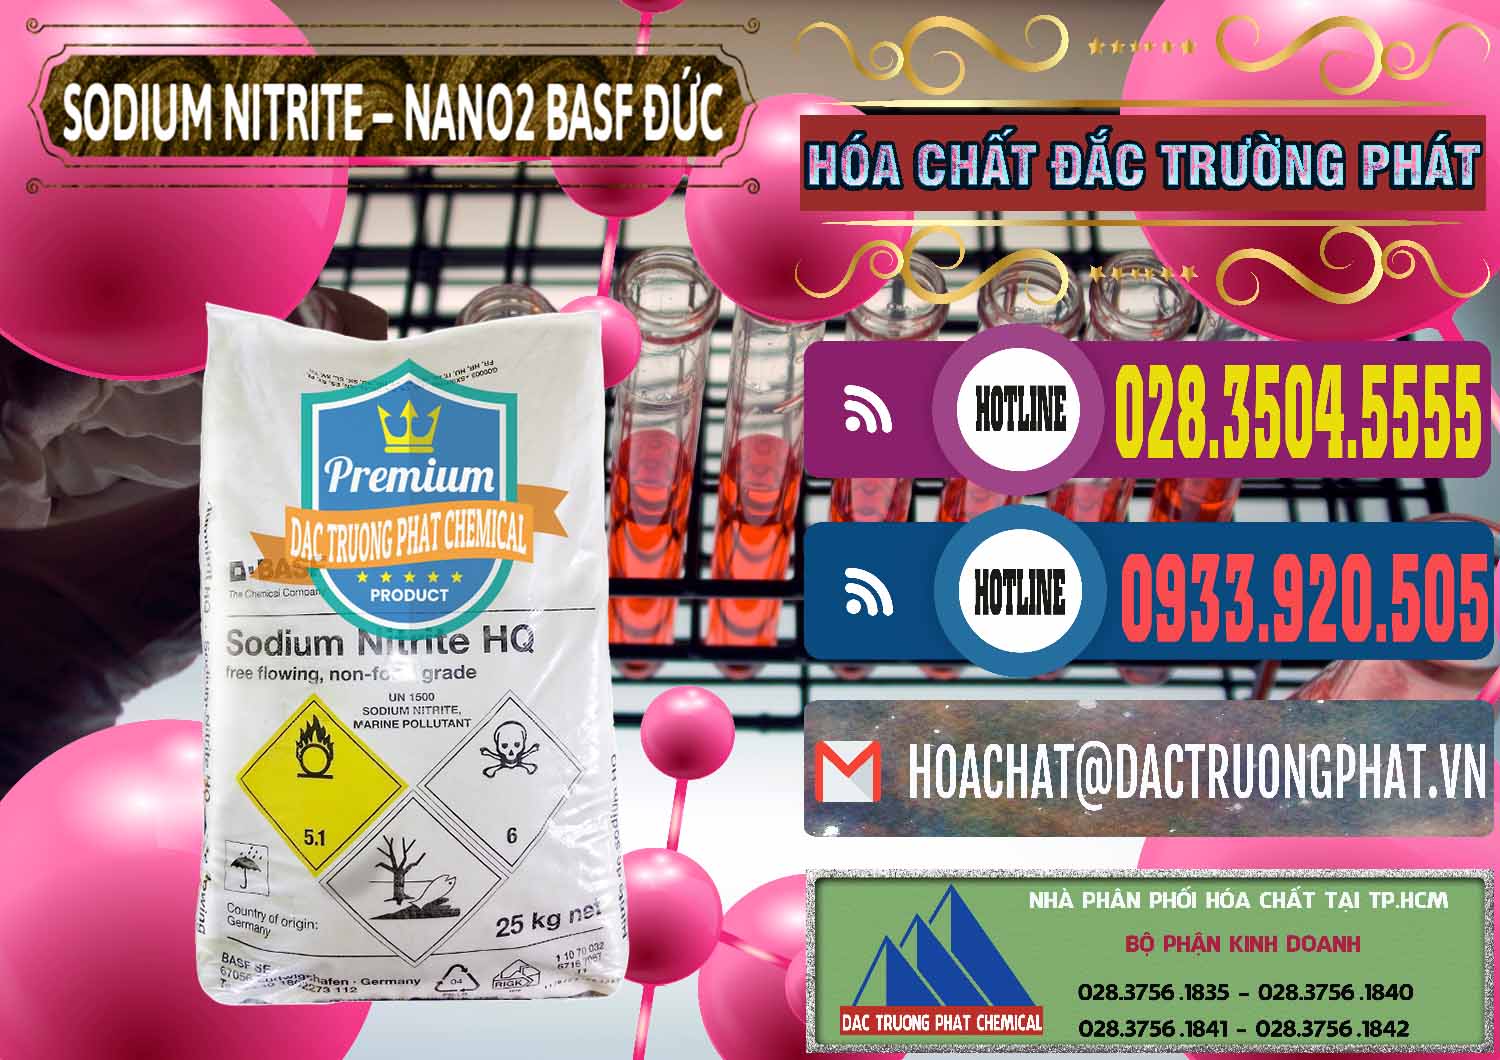 Đơn vị nhập khẩu và bán Sodium Nitrite - NANO2 Đức BASF Germany - 0148 - Chuyên bán - phân phối hóa chất tại TP.HCM - muabanhoachat.com.vn